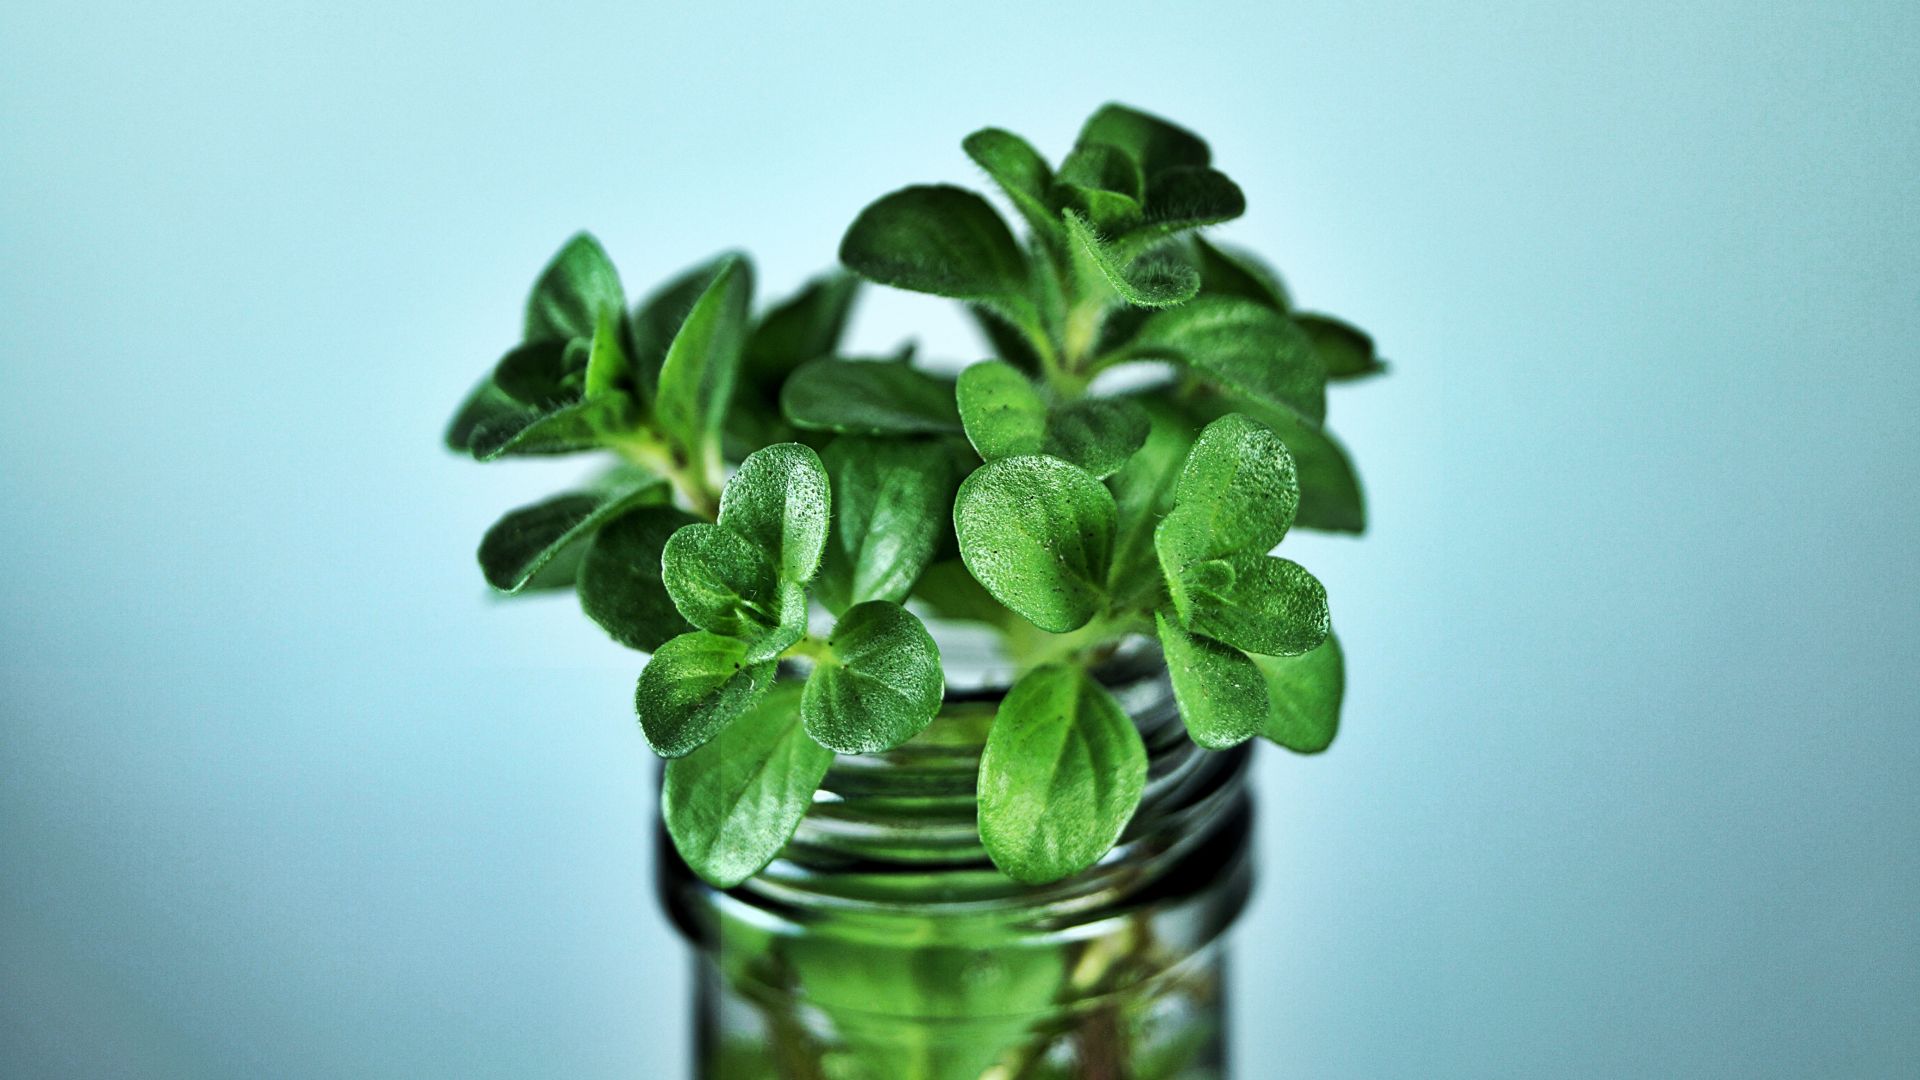 Wallpaper Mint plants in jar